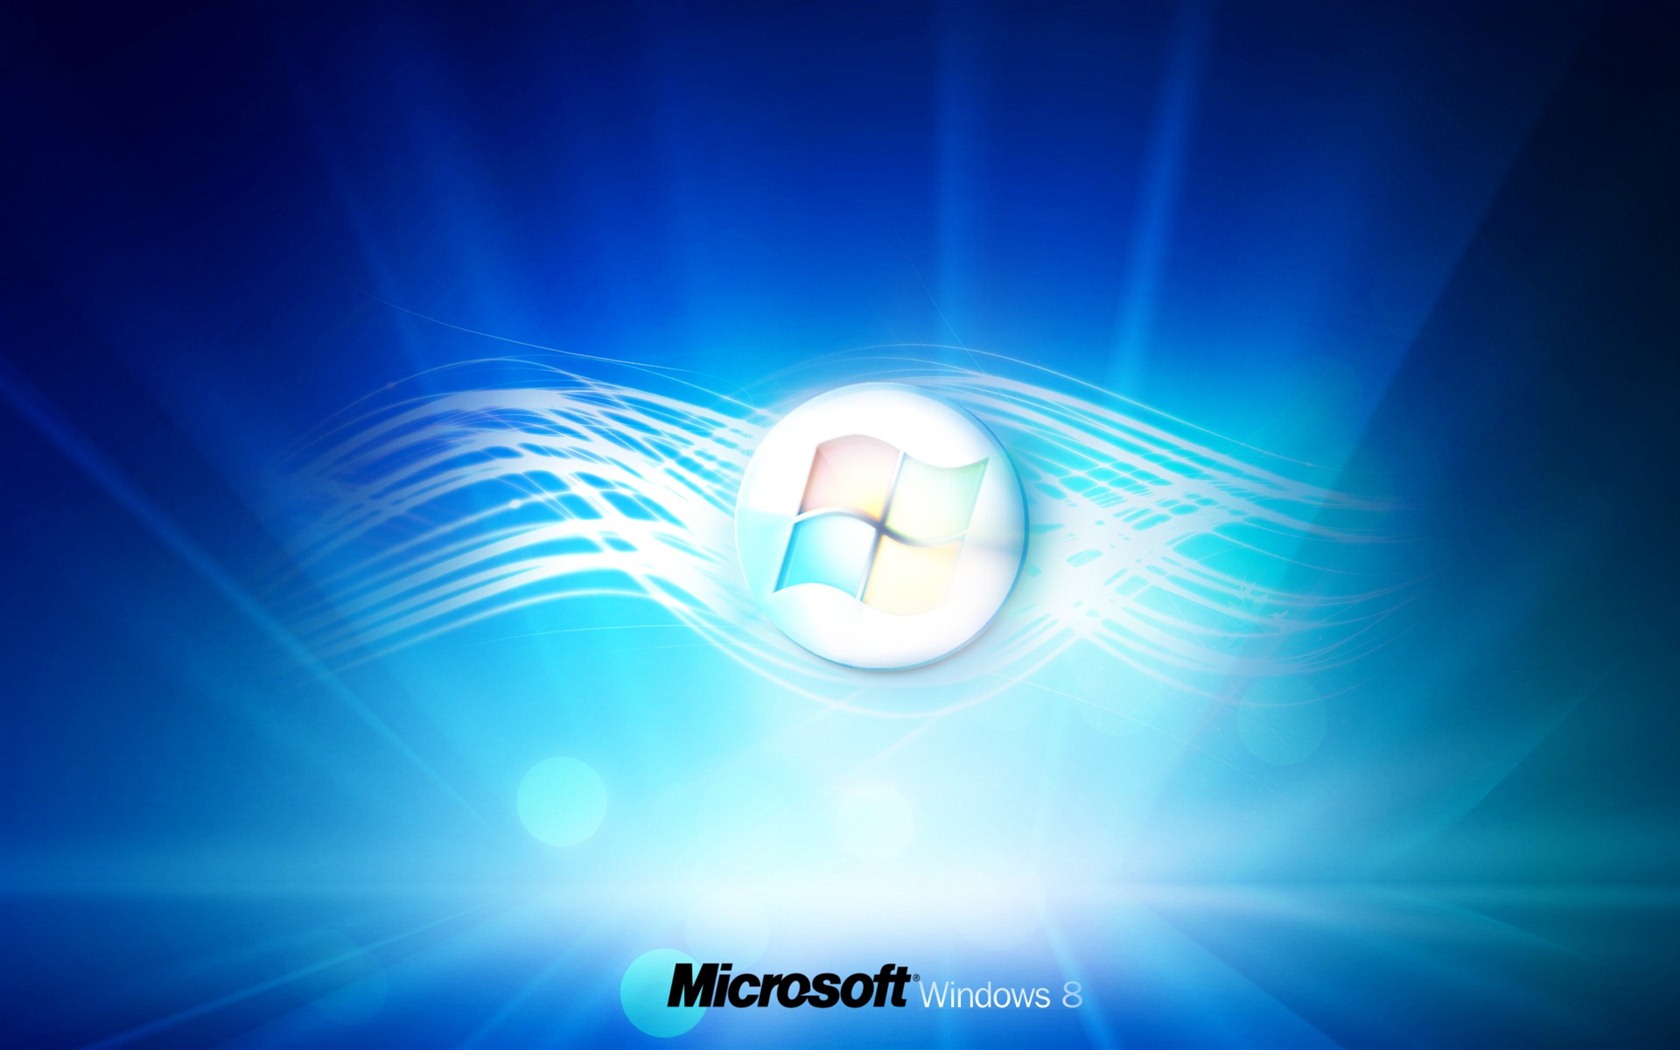 Windows 8 theme wallpaper (1) #3 - 1680x1050